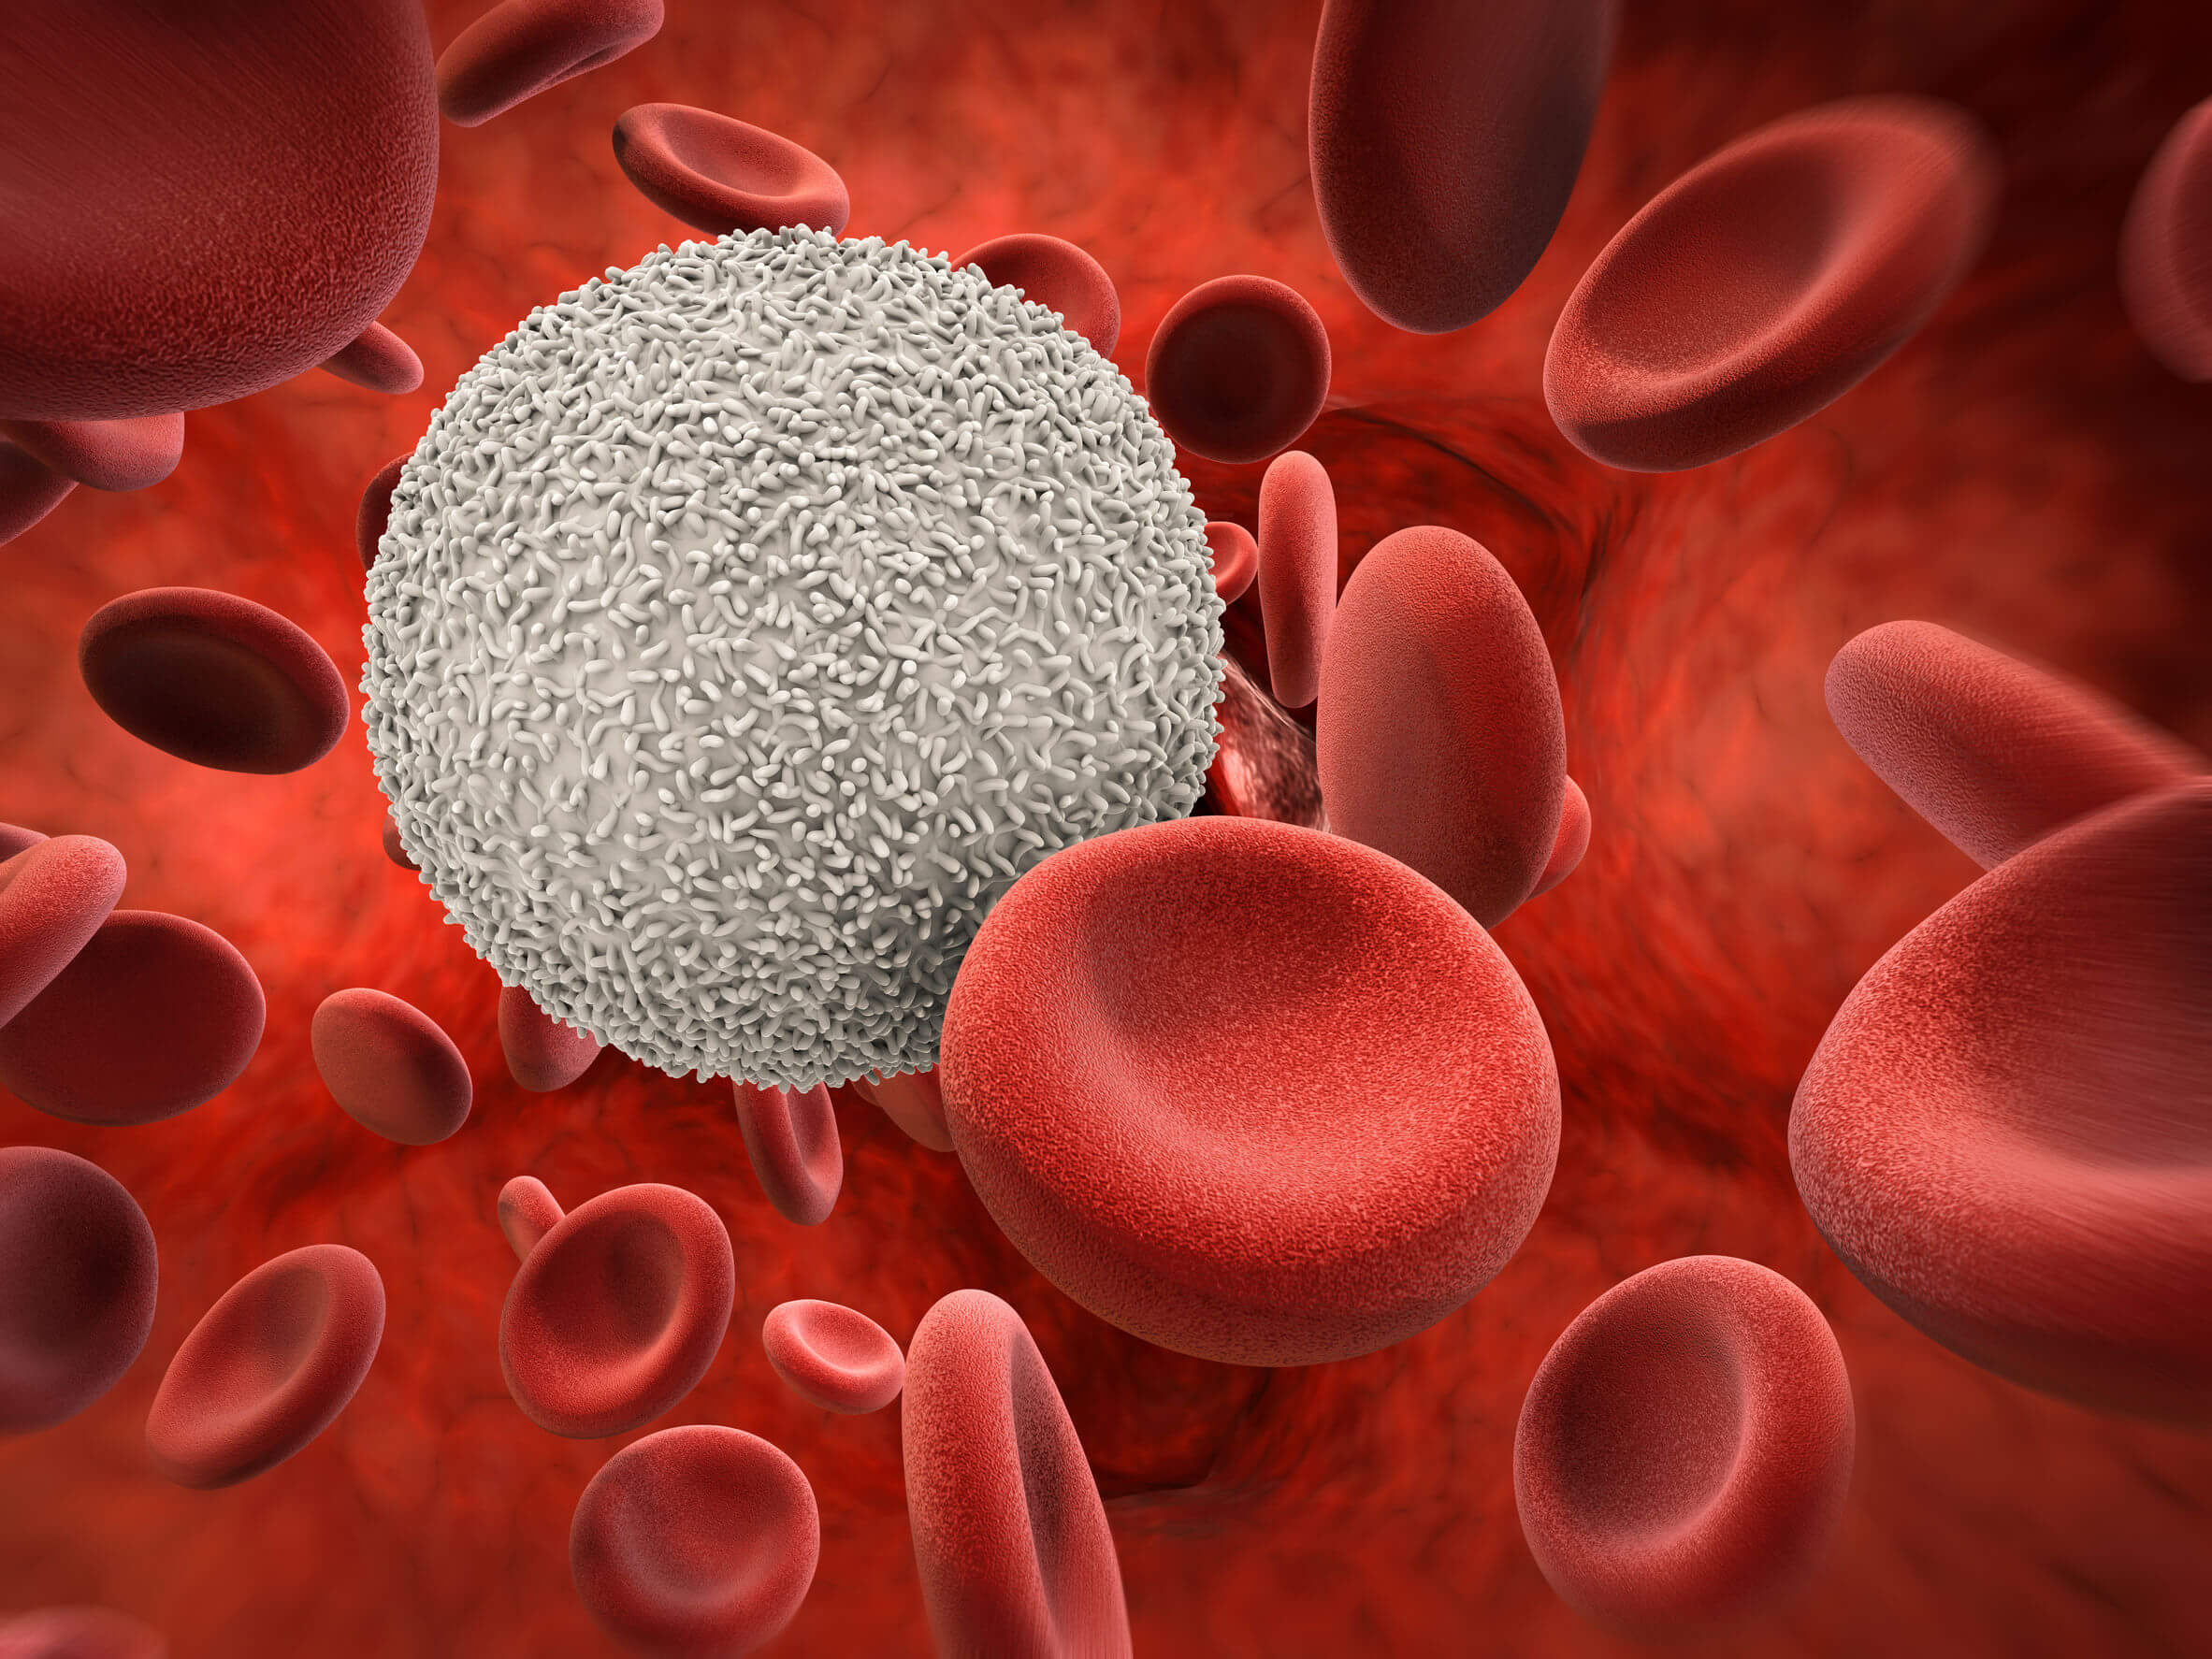 Segmentierte Neutrophile - weiße und rote Blutkörperchen